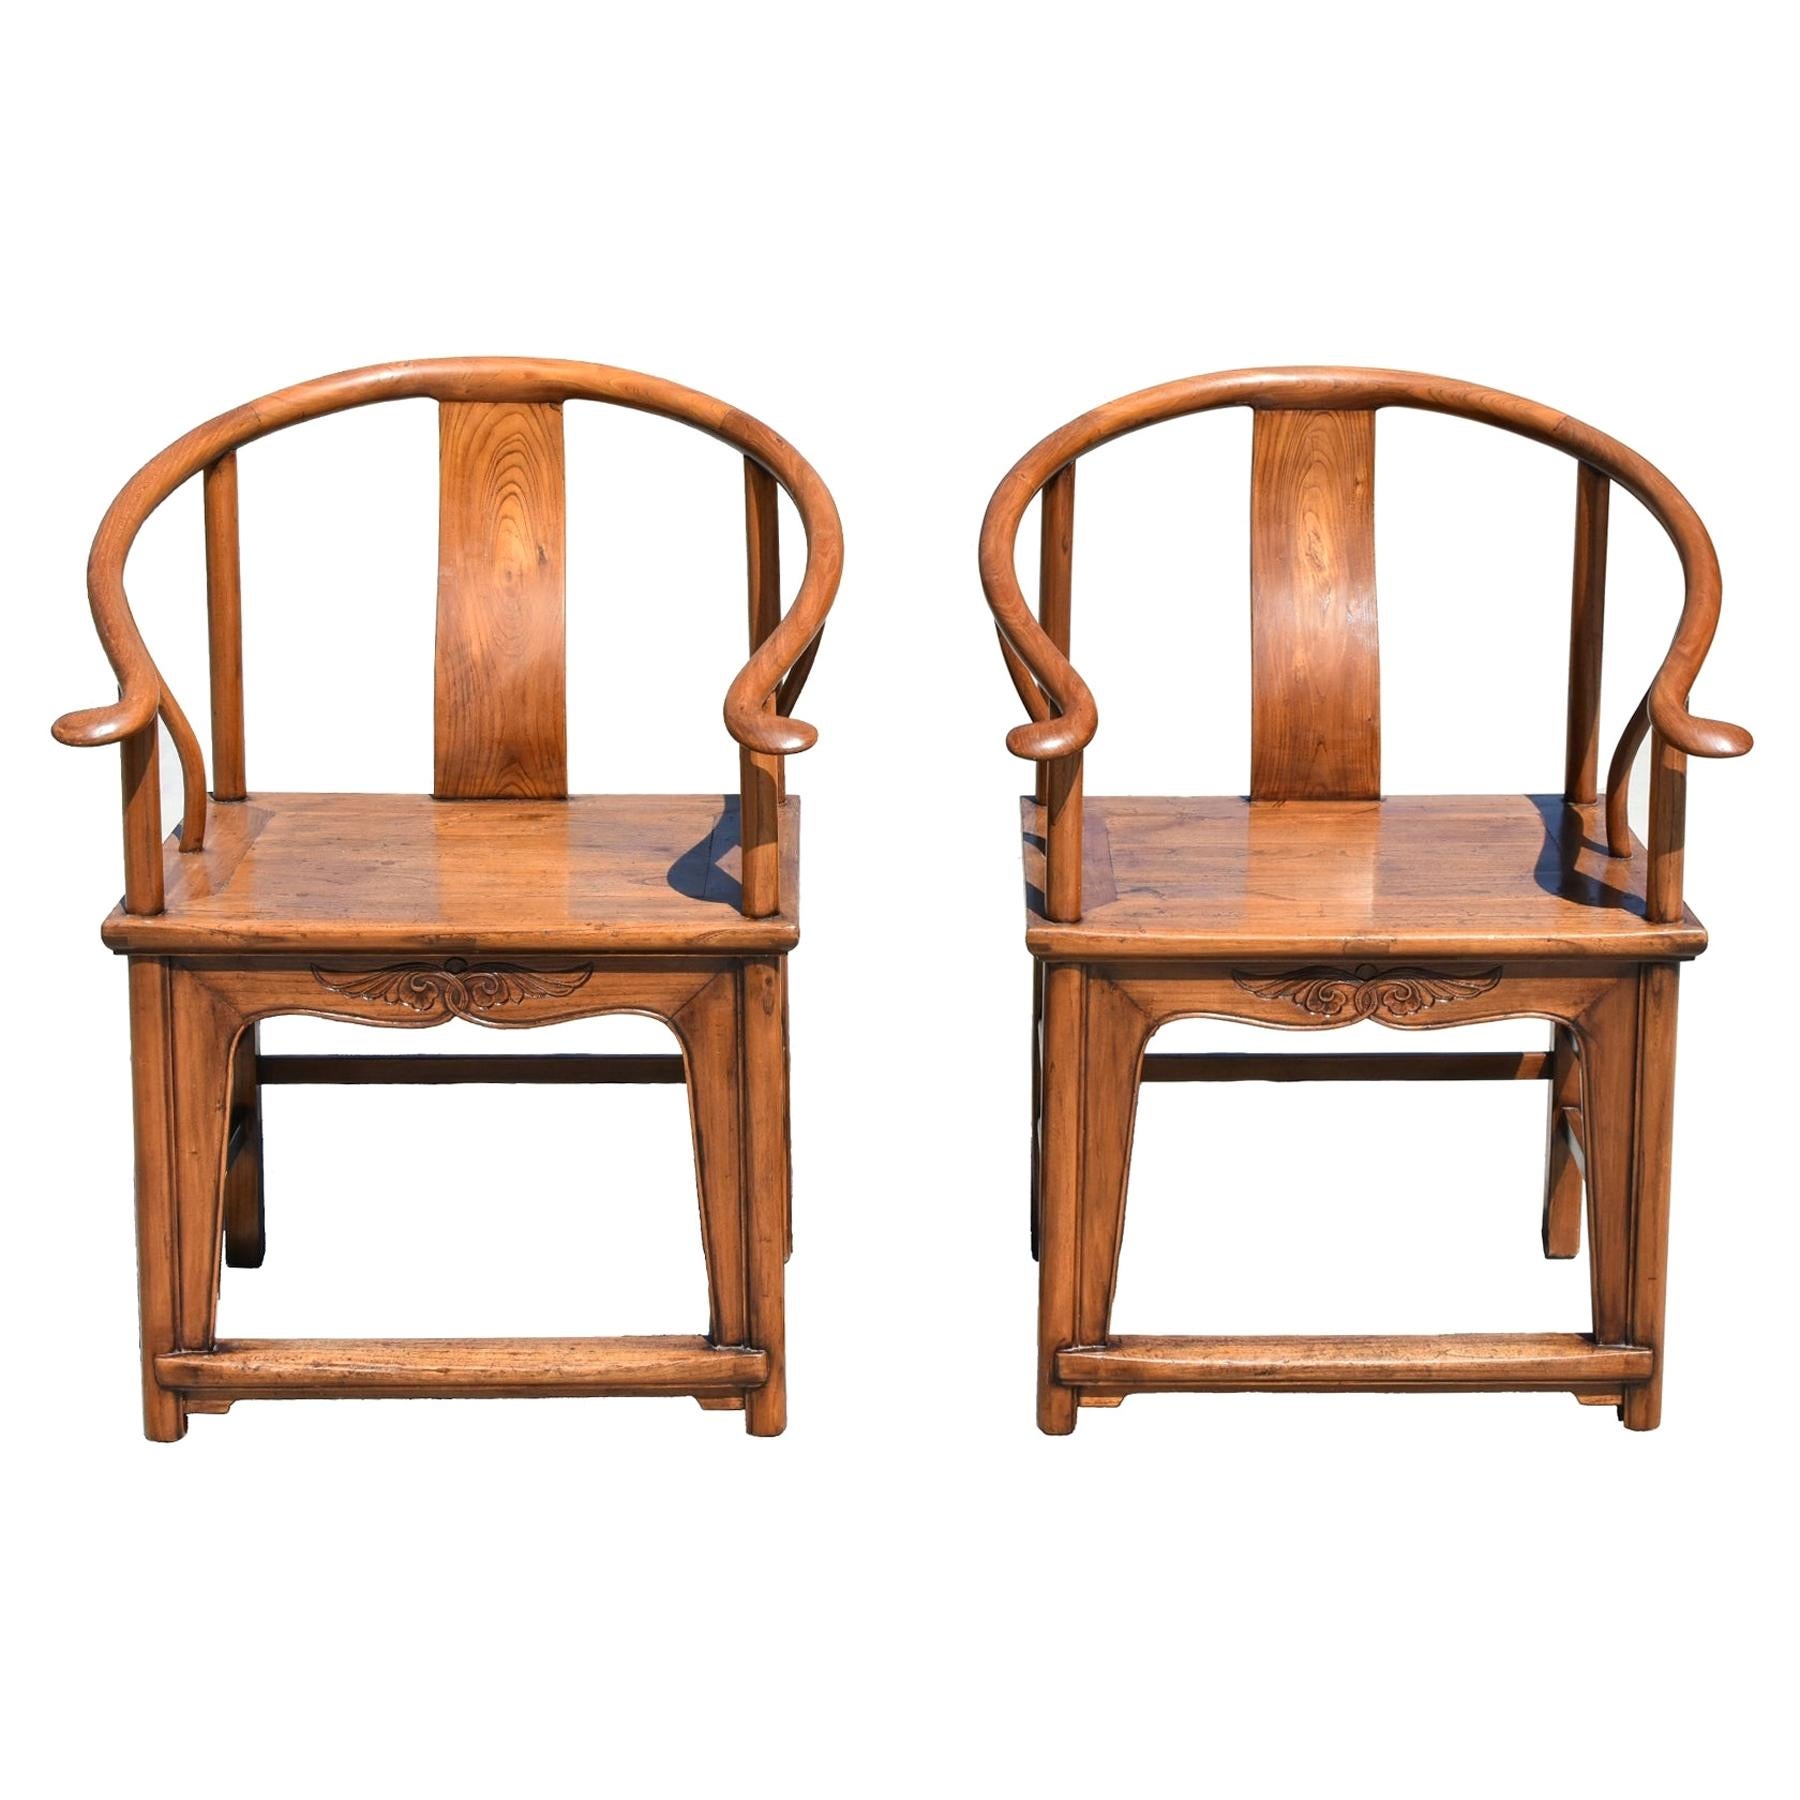 Chinese Horseshoe Chairs Oversize 19th Century